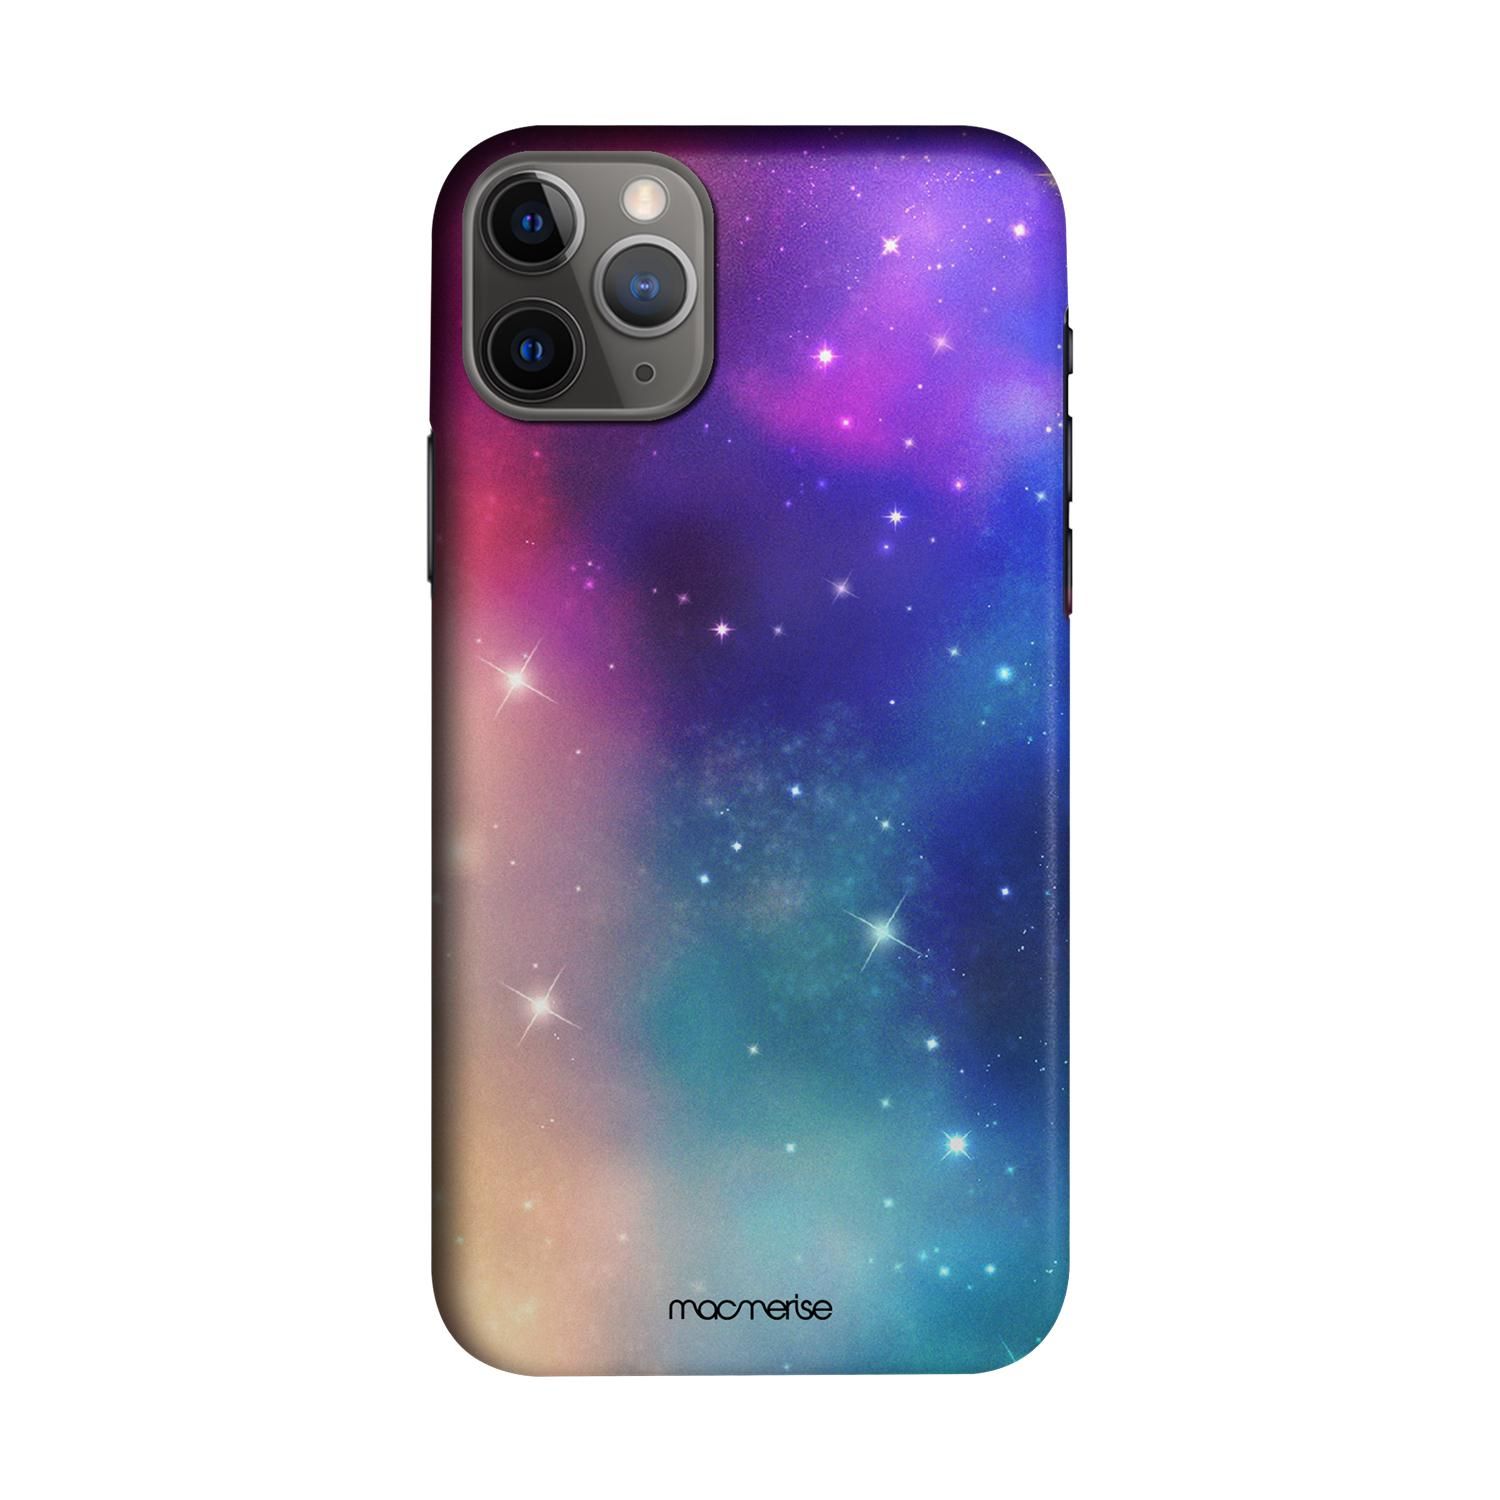 Buy Sky Full of Stars - Sleek Phone Case for iPhone 11 Pro Online